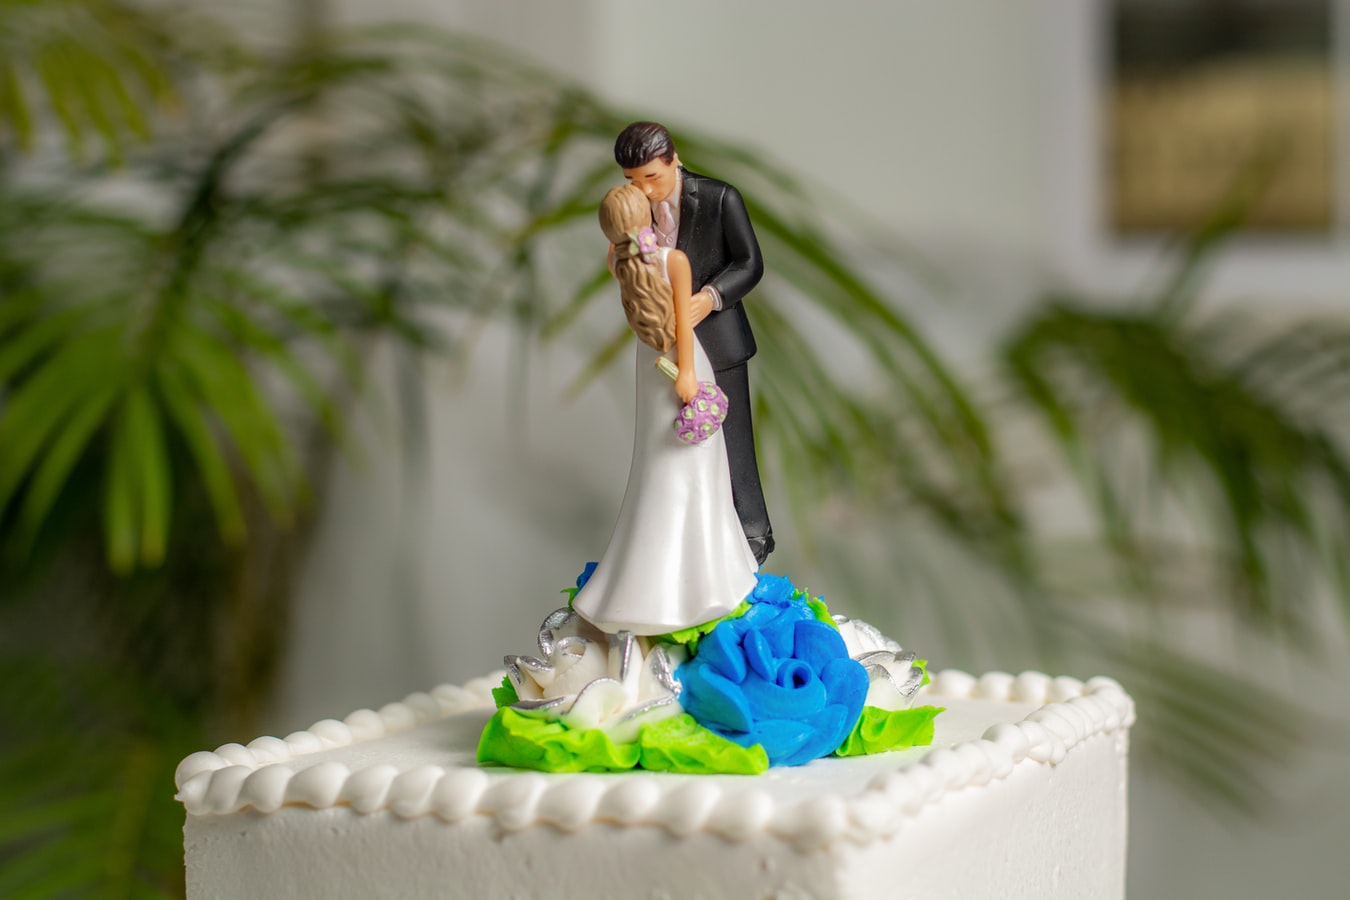 Фигурки на свадебном торте